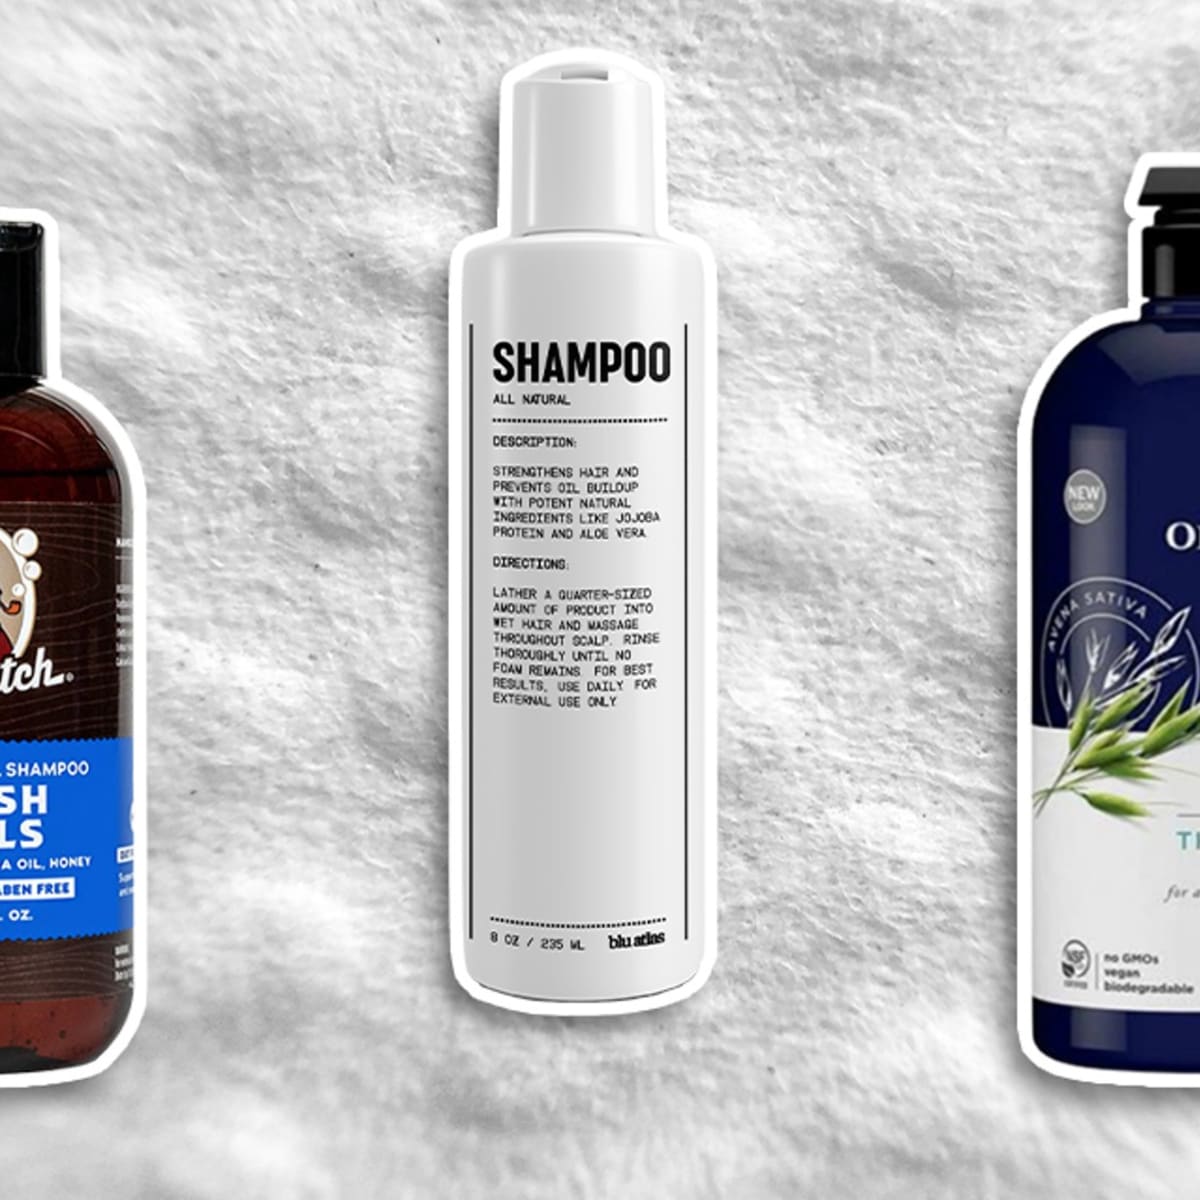 Organics Daily Hair Care Shampoo Aloe Vera 1L - Clicks